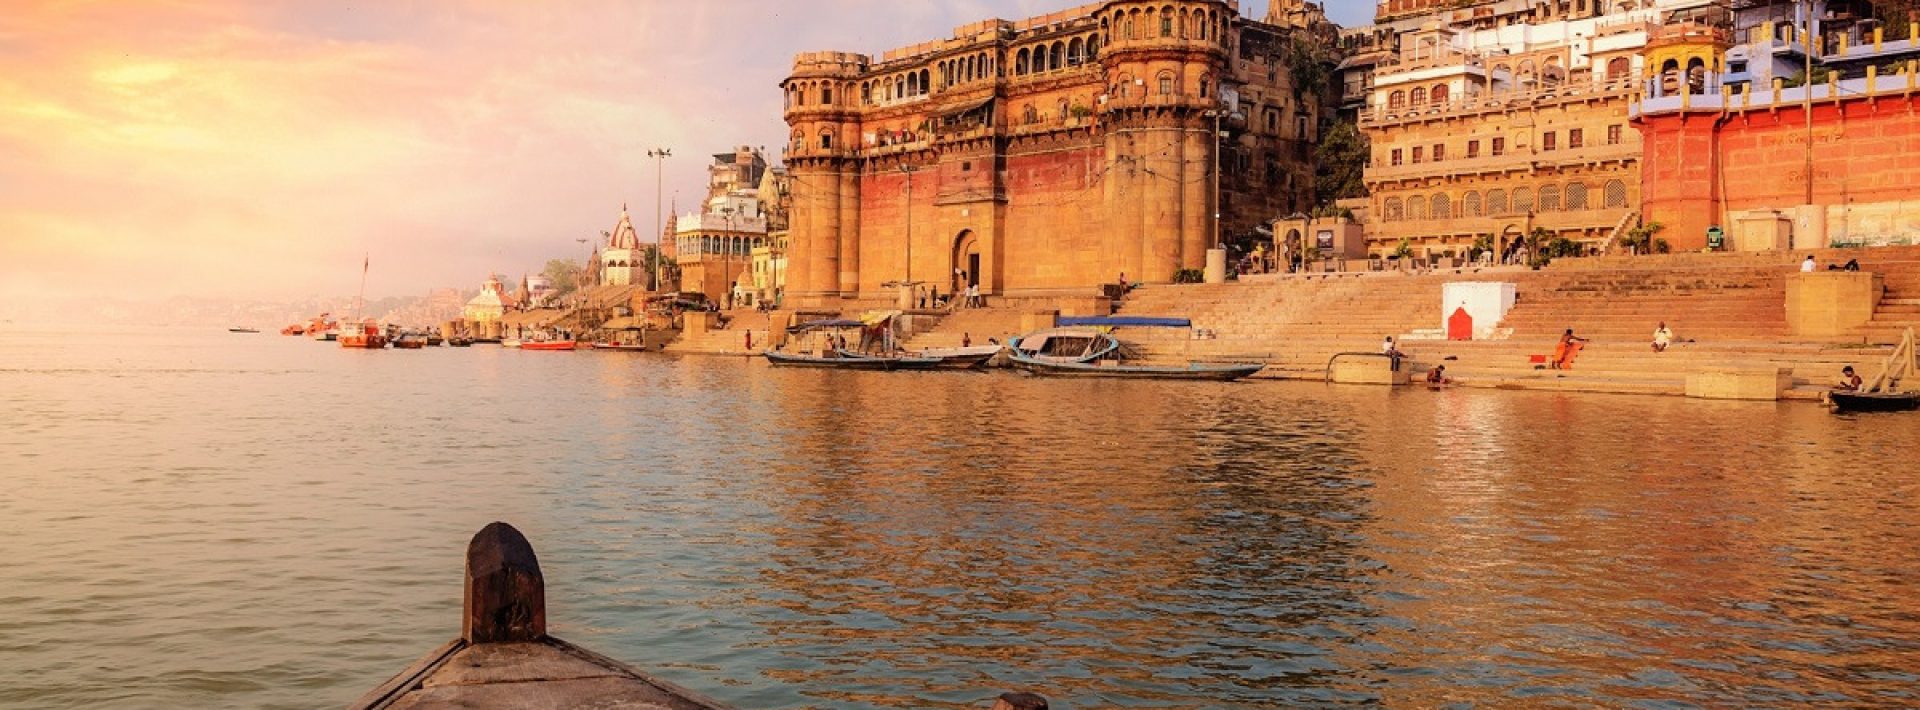 Holy-River-Ganges-at-Varanasi-